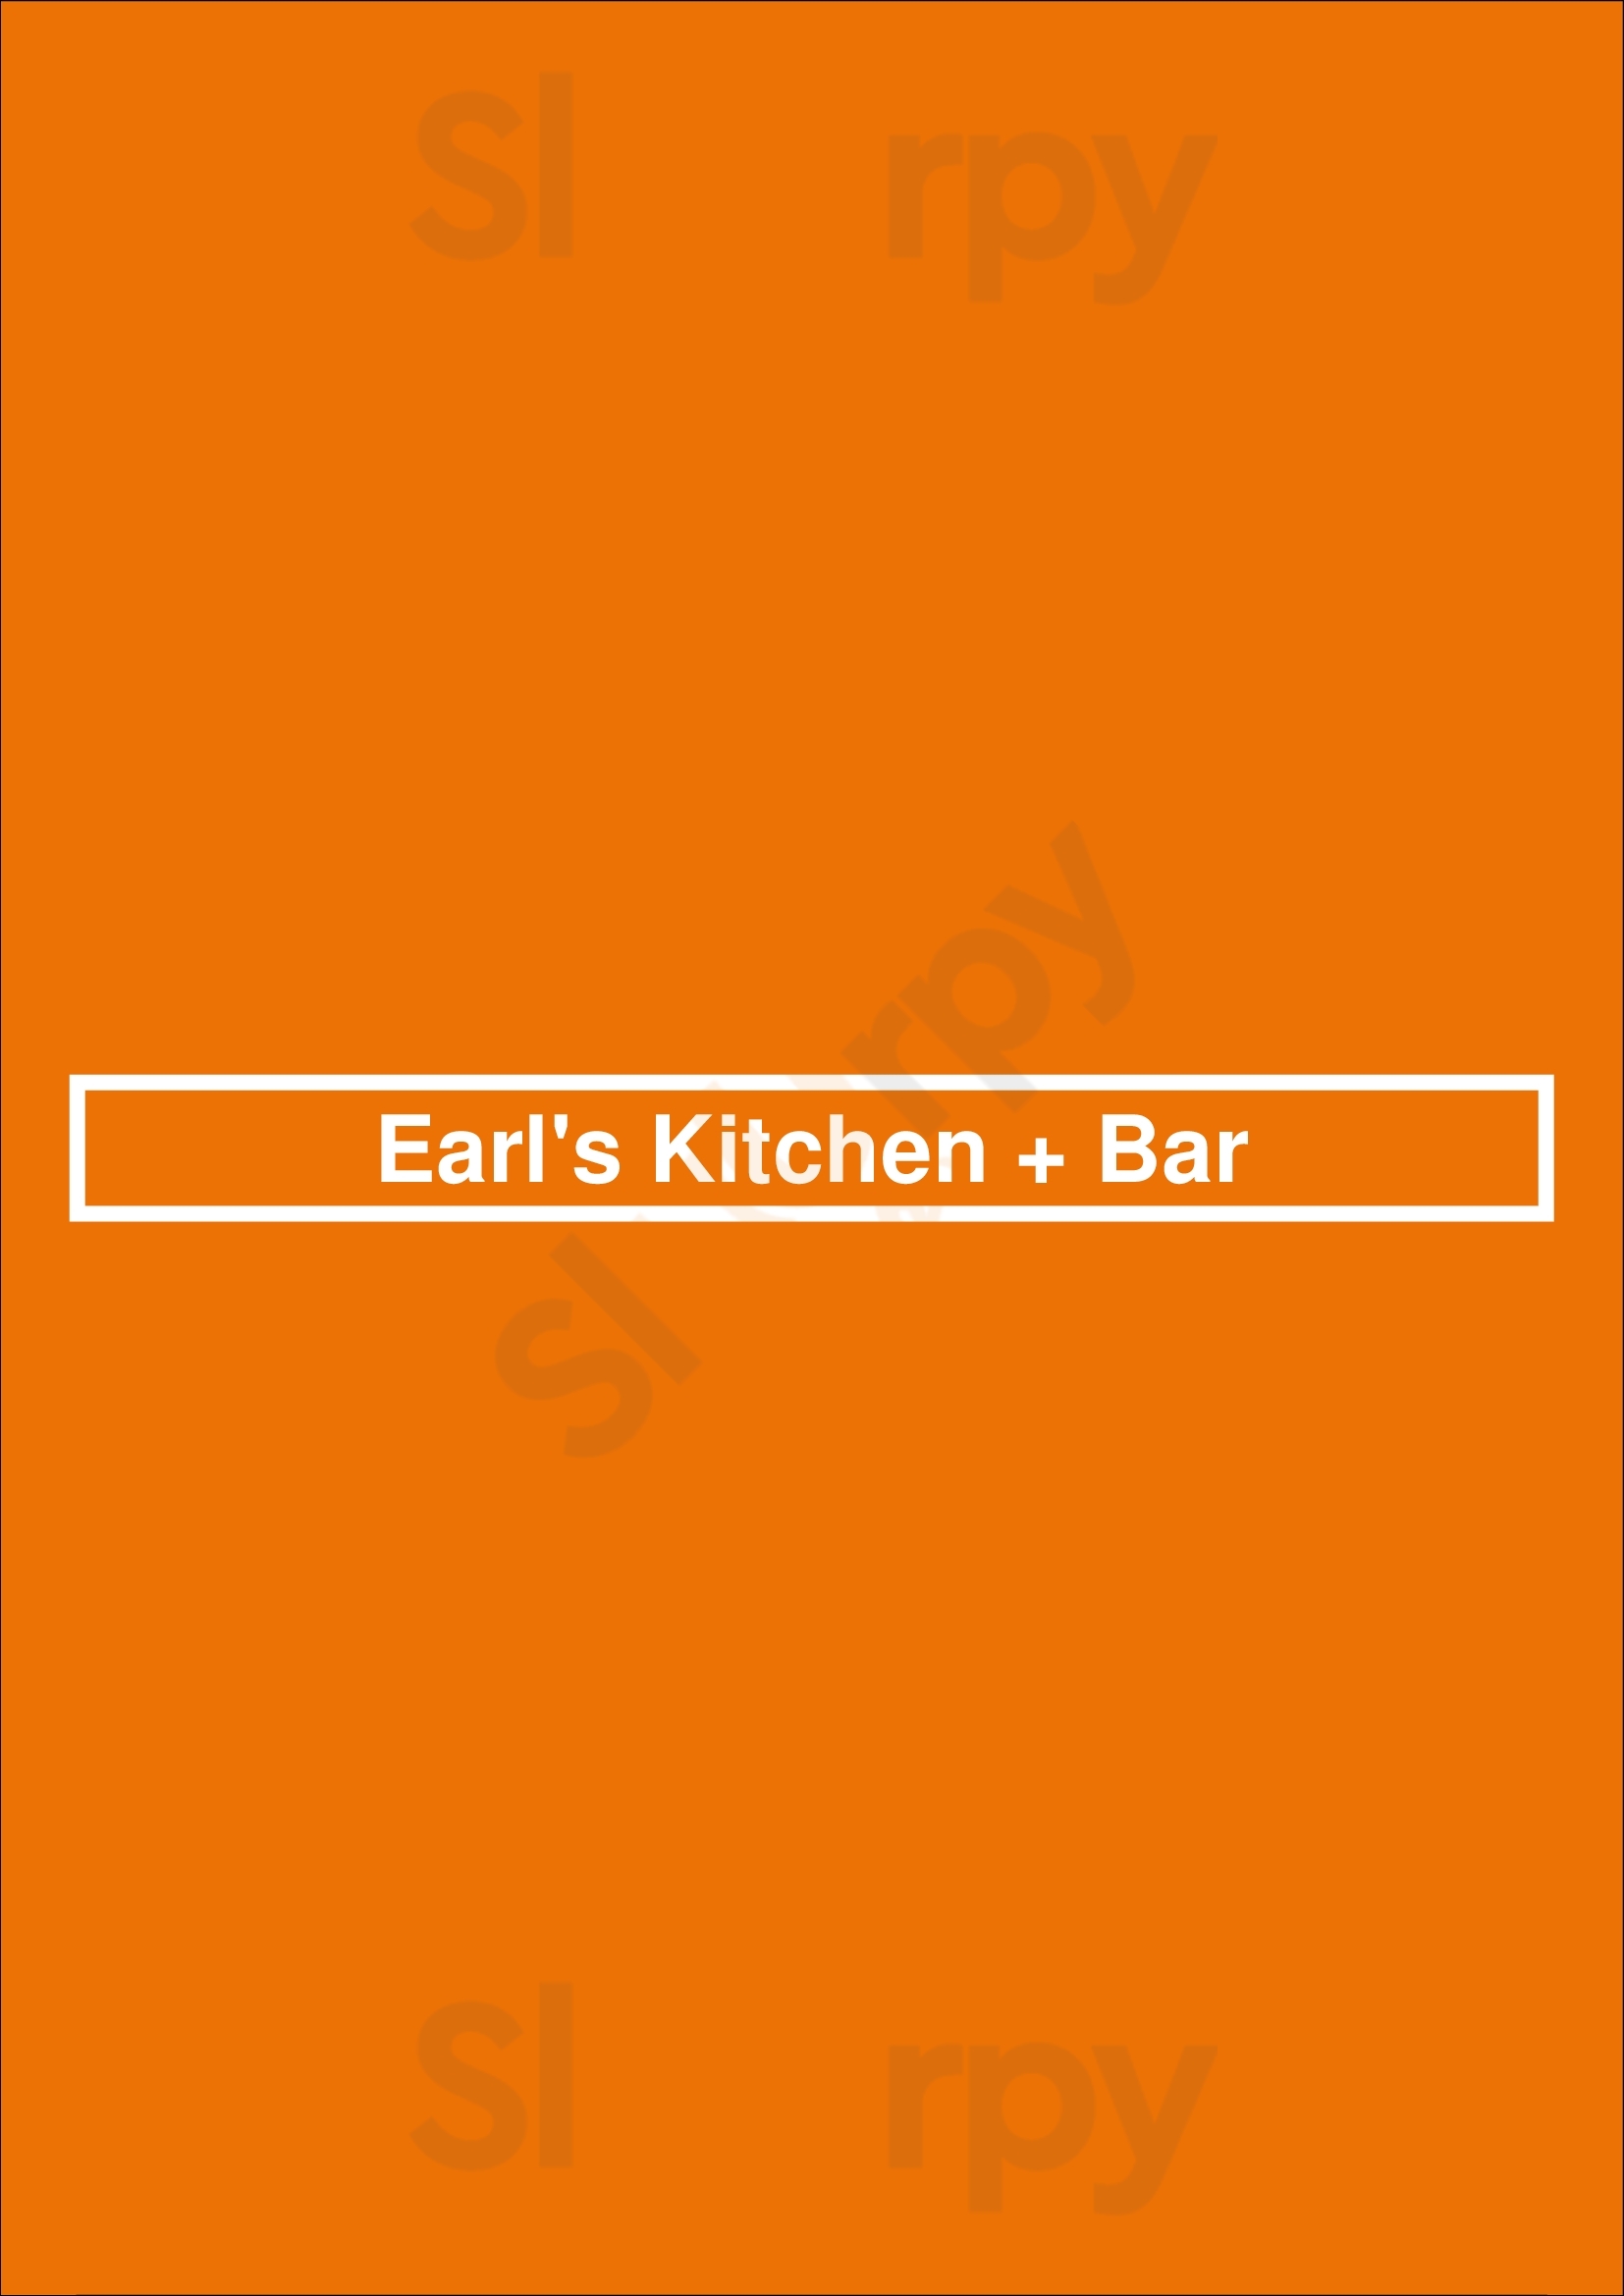 Earl's Kitchen + Bar Edmonton Menu - 1